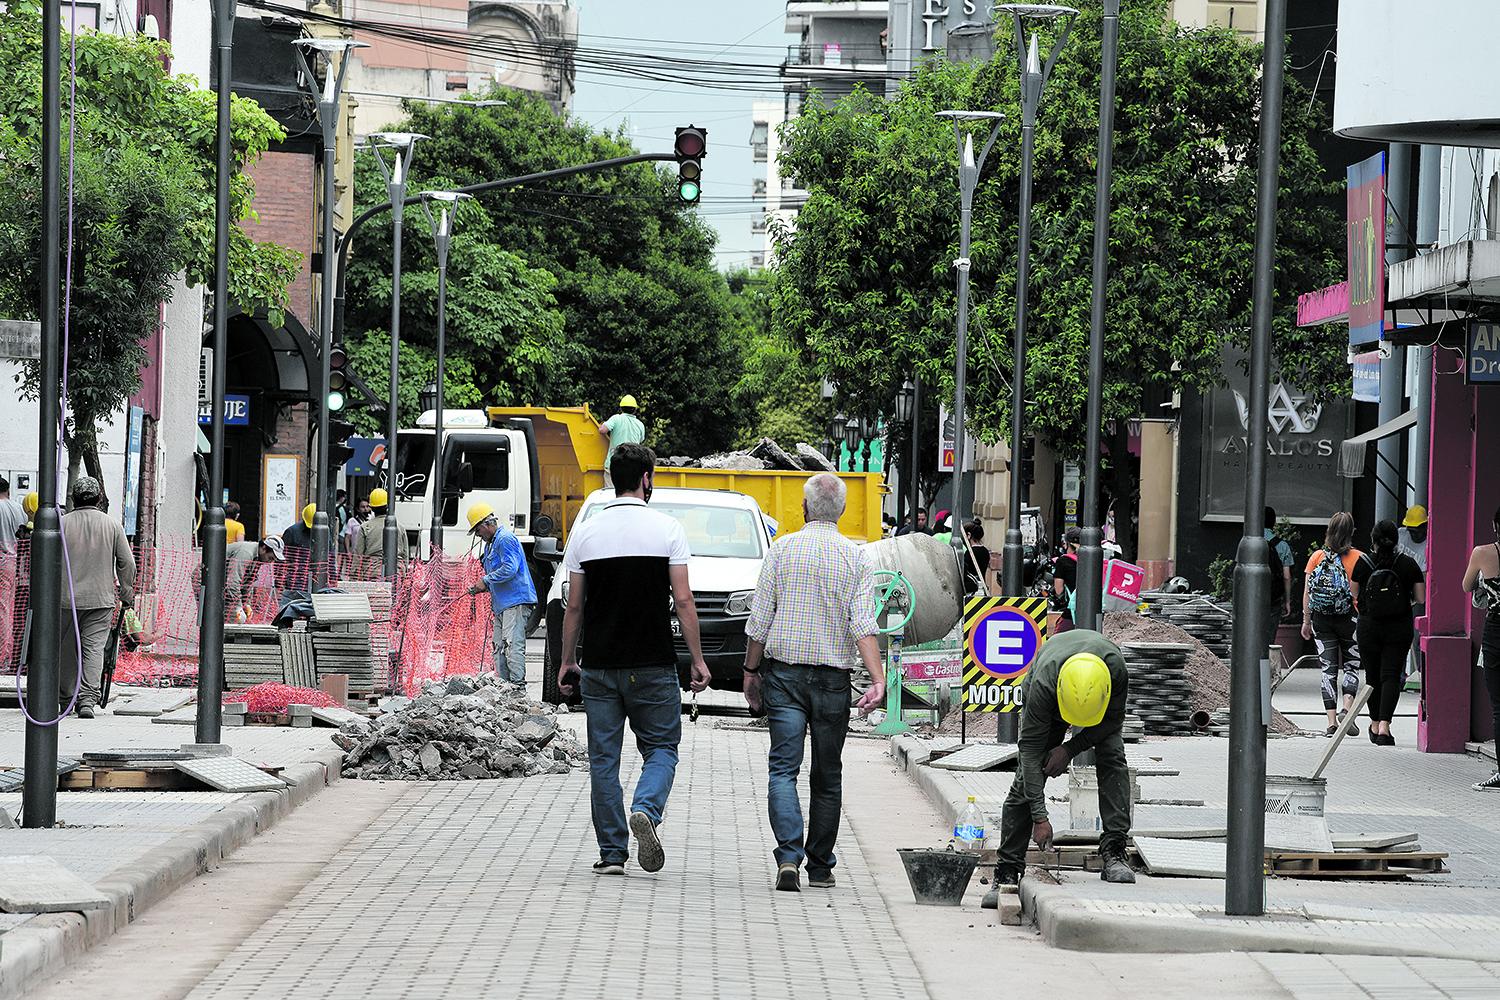 LIMPIEZA. Los operarios retiran las redes para dividir las zonas donde no se puede caminar y retiran los escombros para dejar habilitado el tránsito.